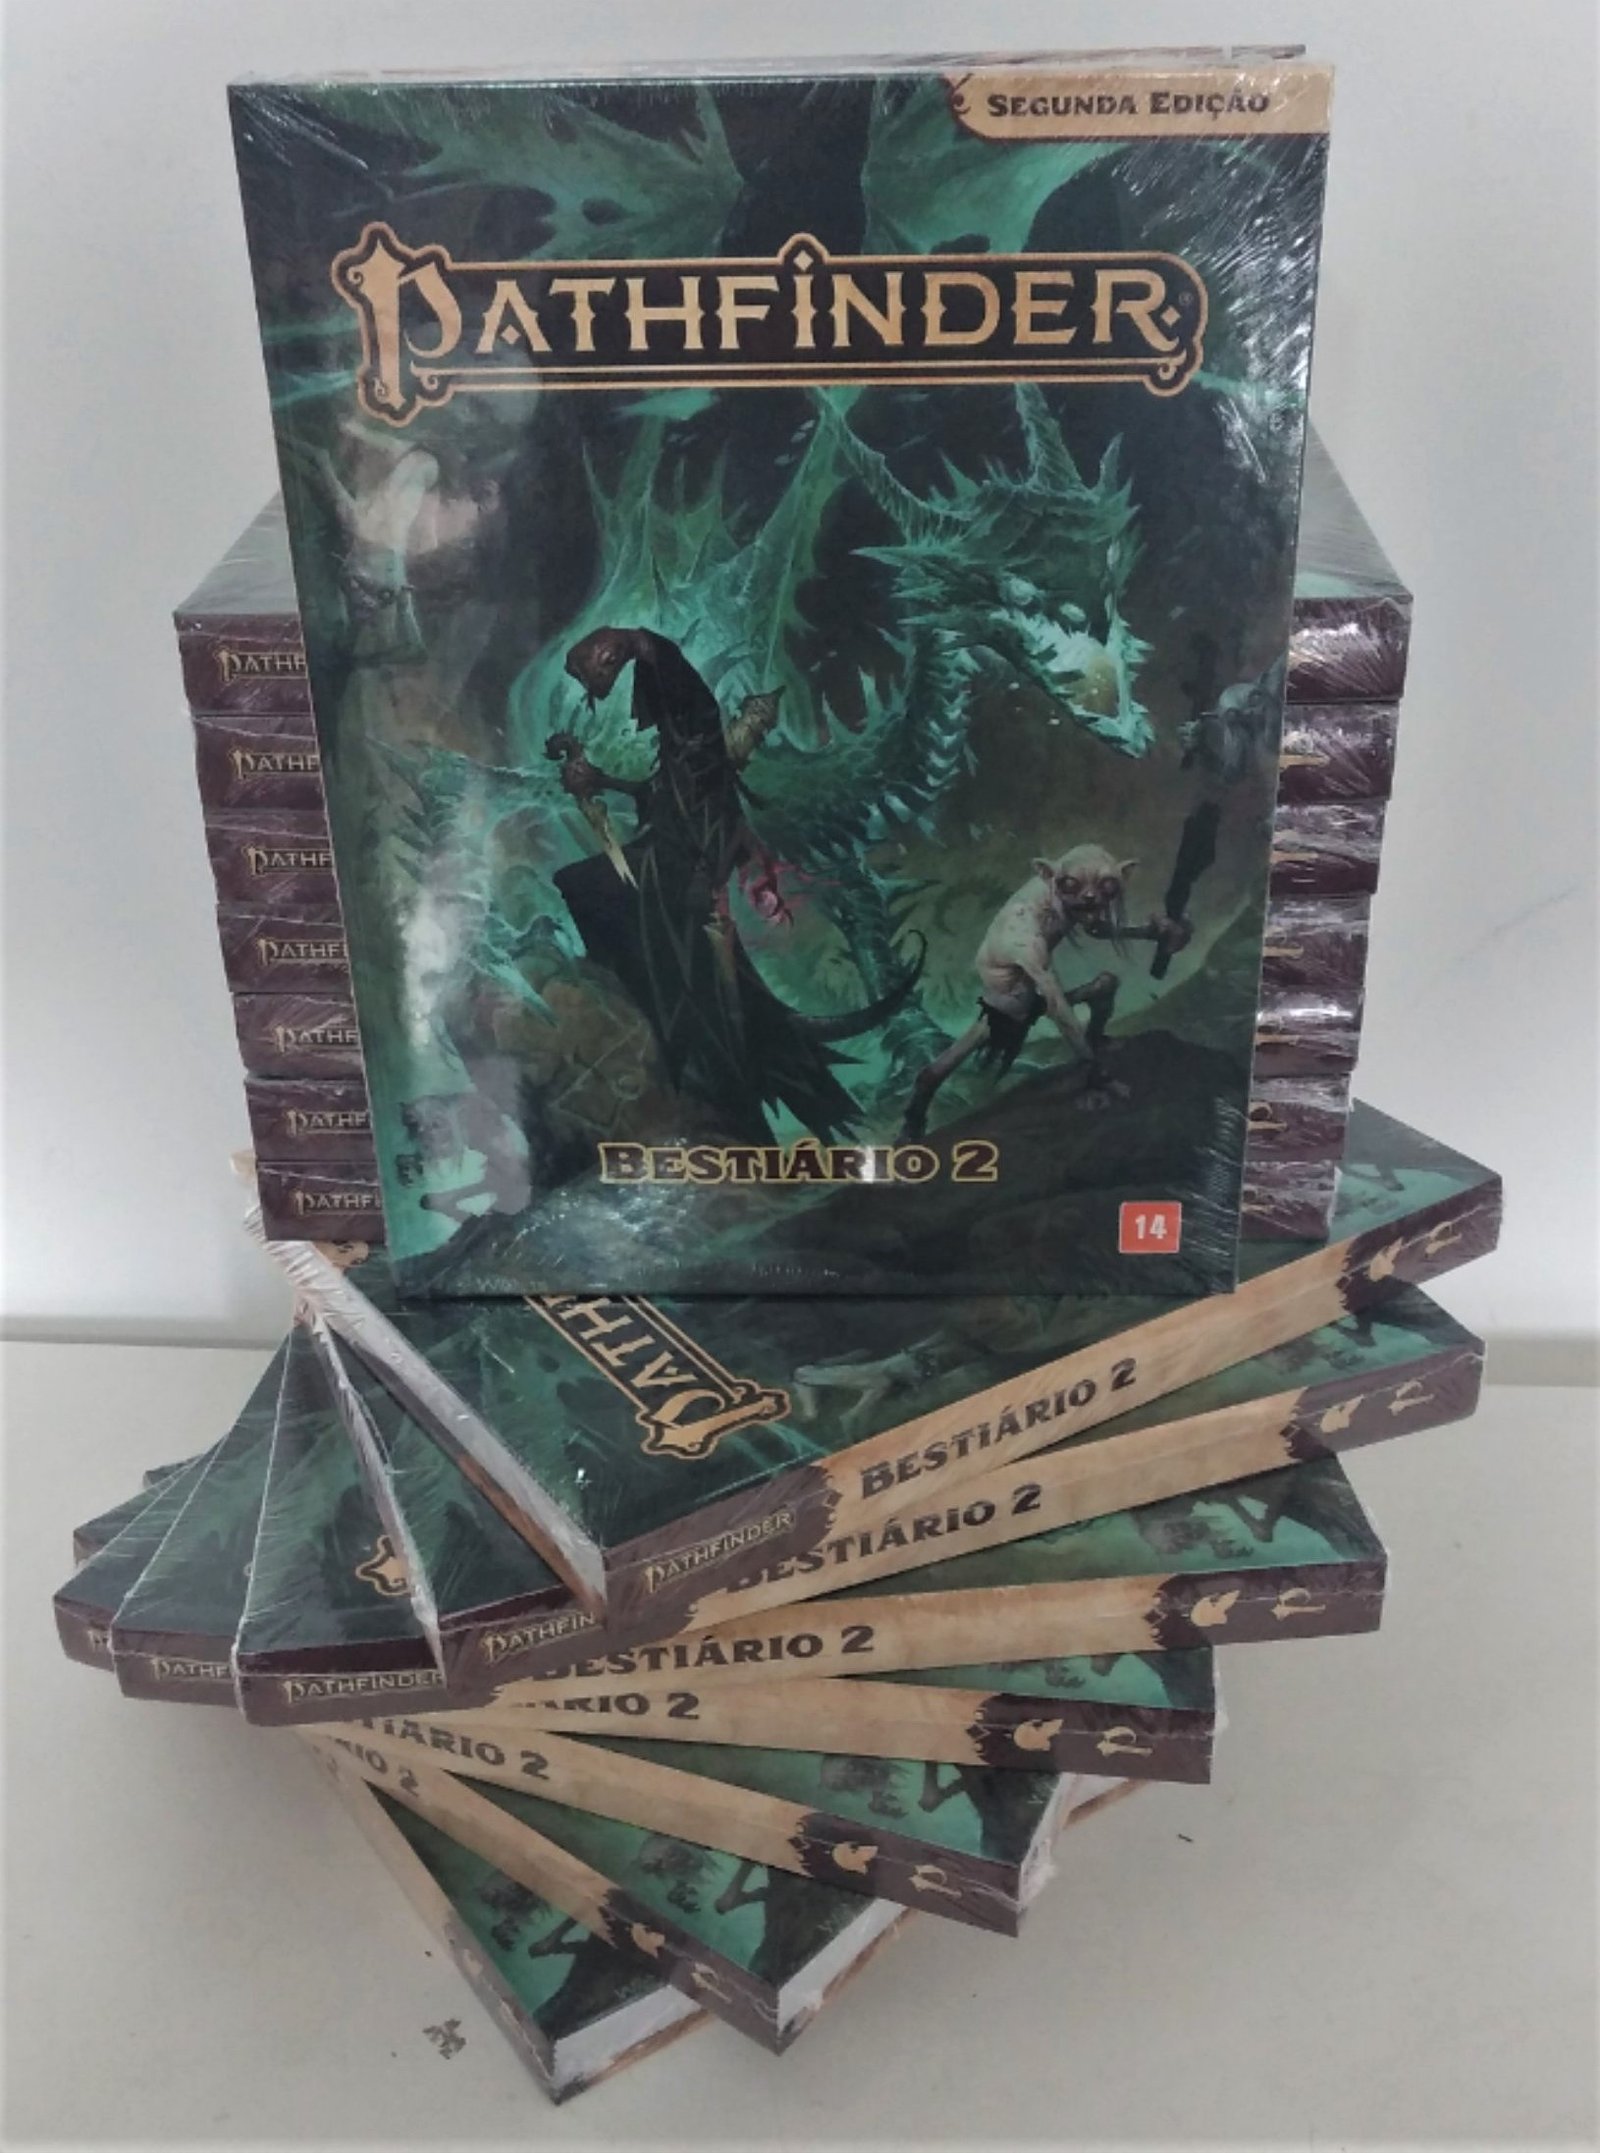 Pathfinder 2E: Presságios Perdidos - Guia de Personagens